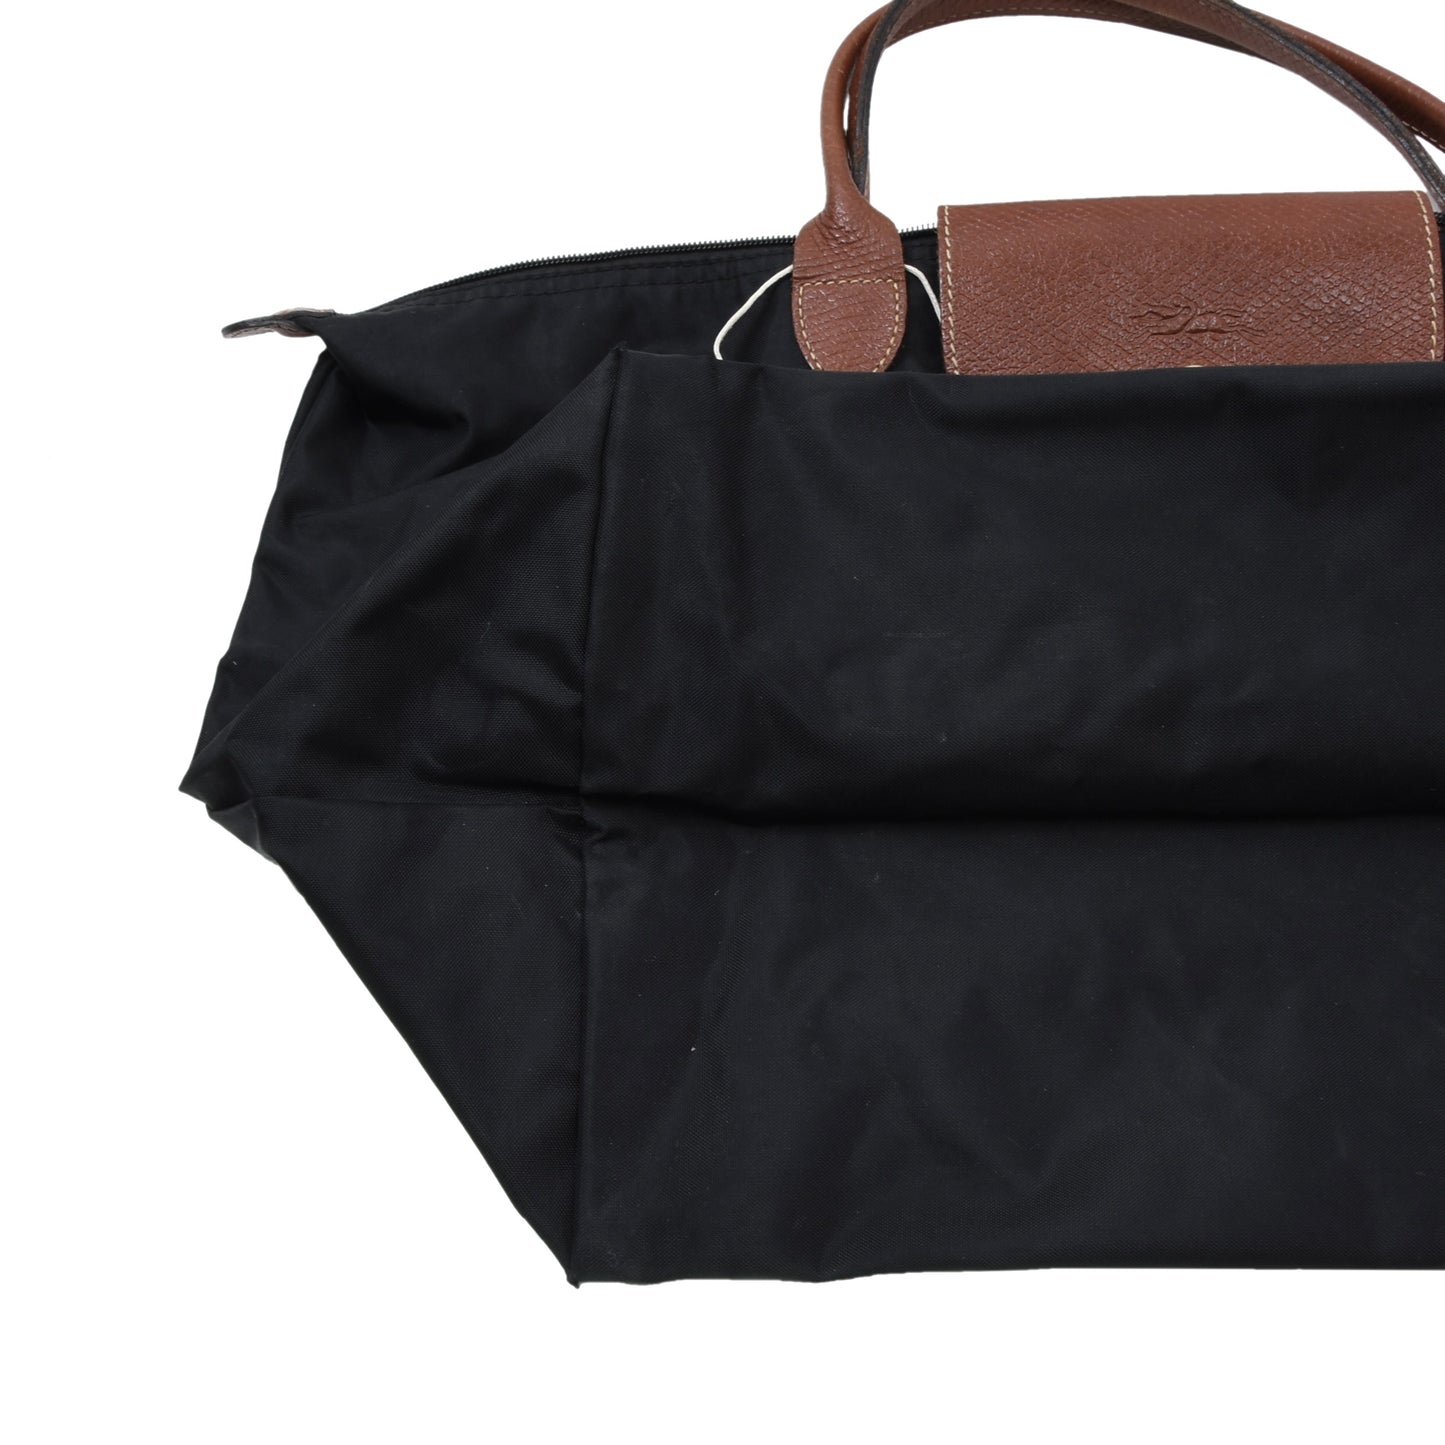 Longchamp Paris Les Pliage Bag Type M - Black